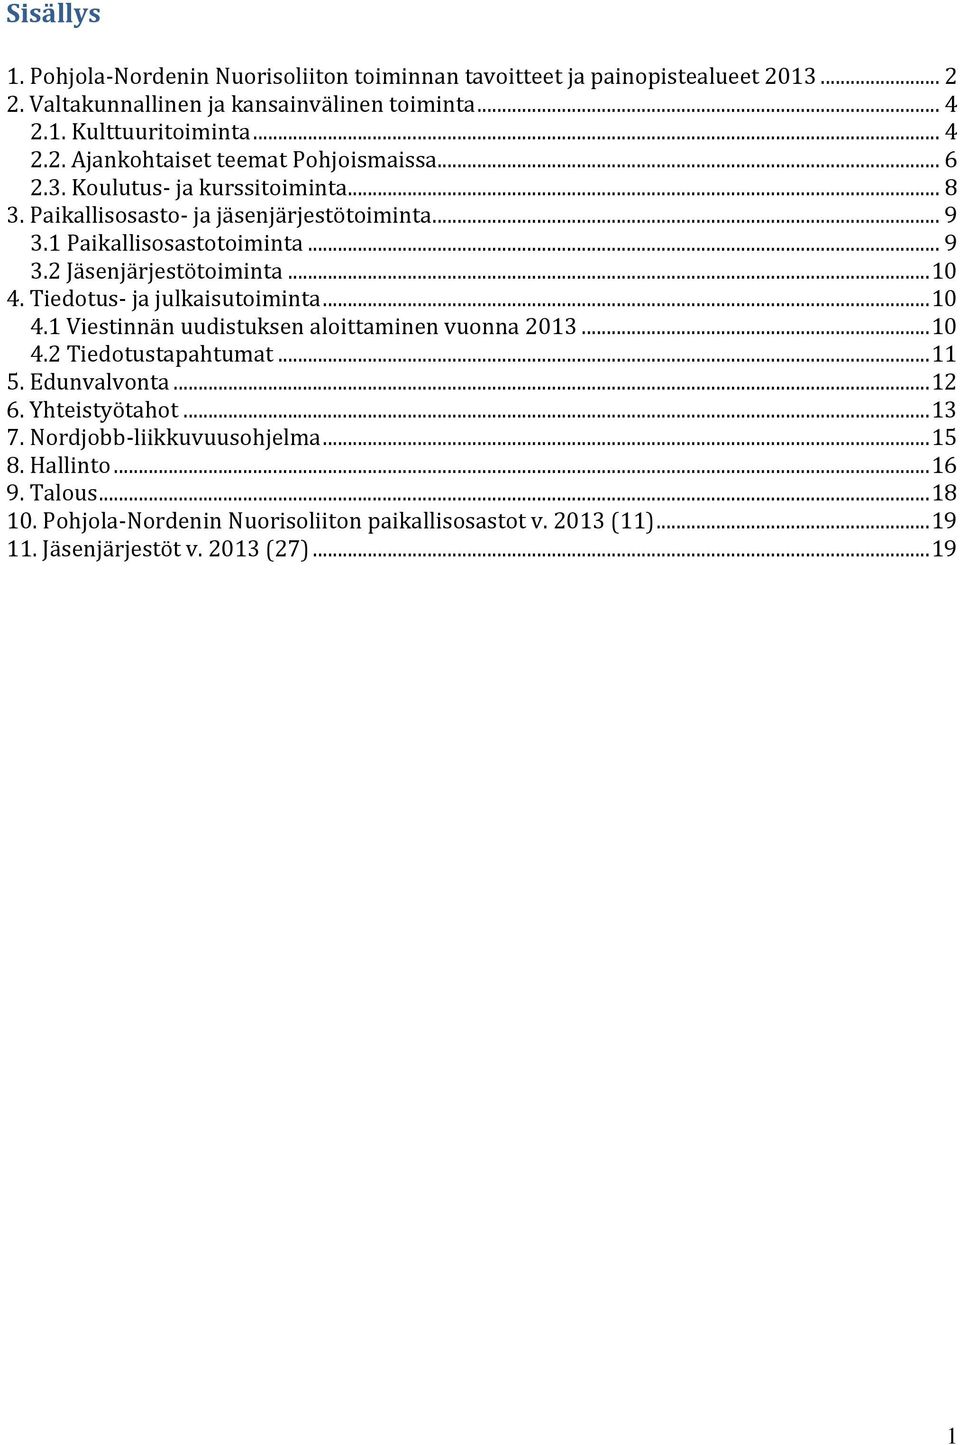 Tiedotus- ja julkaisutoiminta... 10 4.1 Viestinnän uudistuksen aloittaminen vuonna 2013... 10 4.2 Tiedotustapahtumat... 11 5. Edunvalvonta... 12 6. Yhteistyötahot... 13 7.